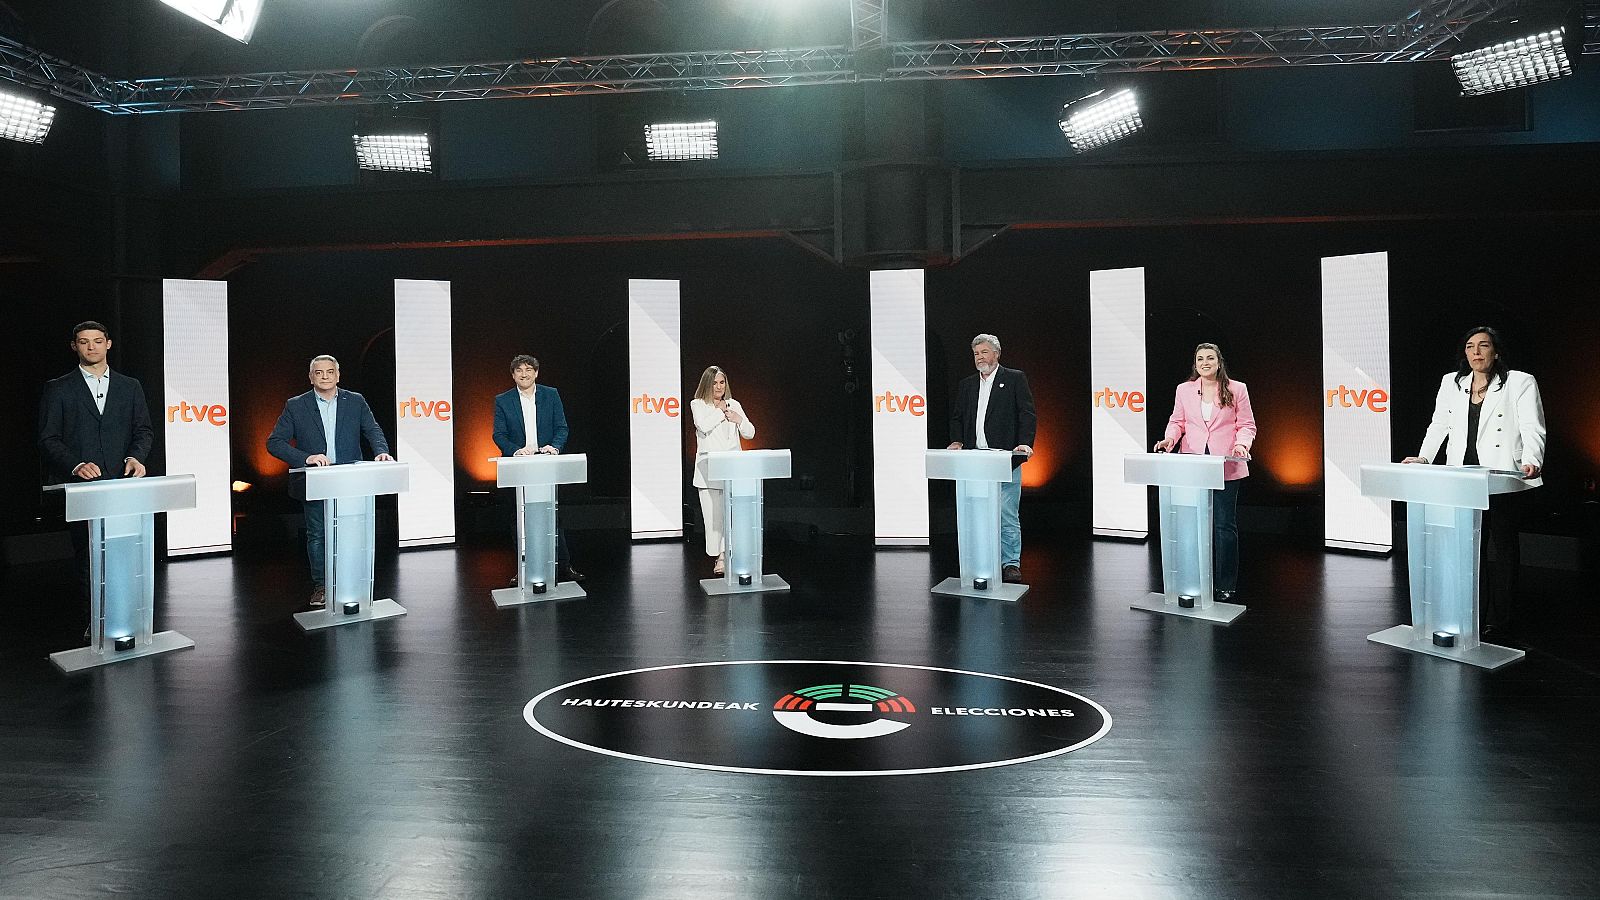 La sanidad, uno de los temas principales en el debate de las elecciones vascas en RTVE